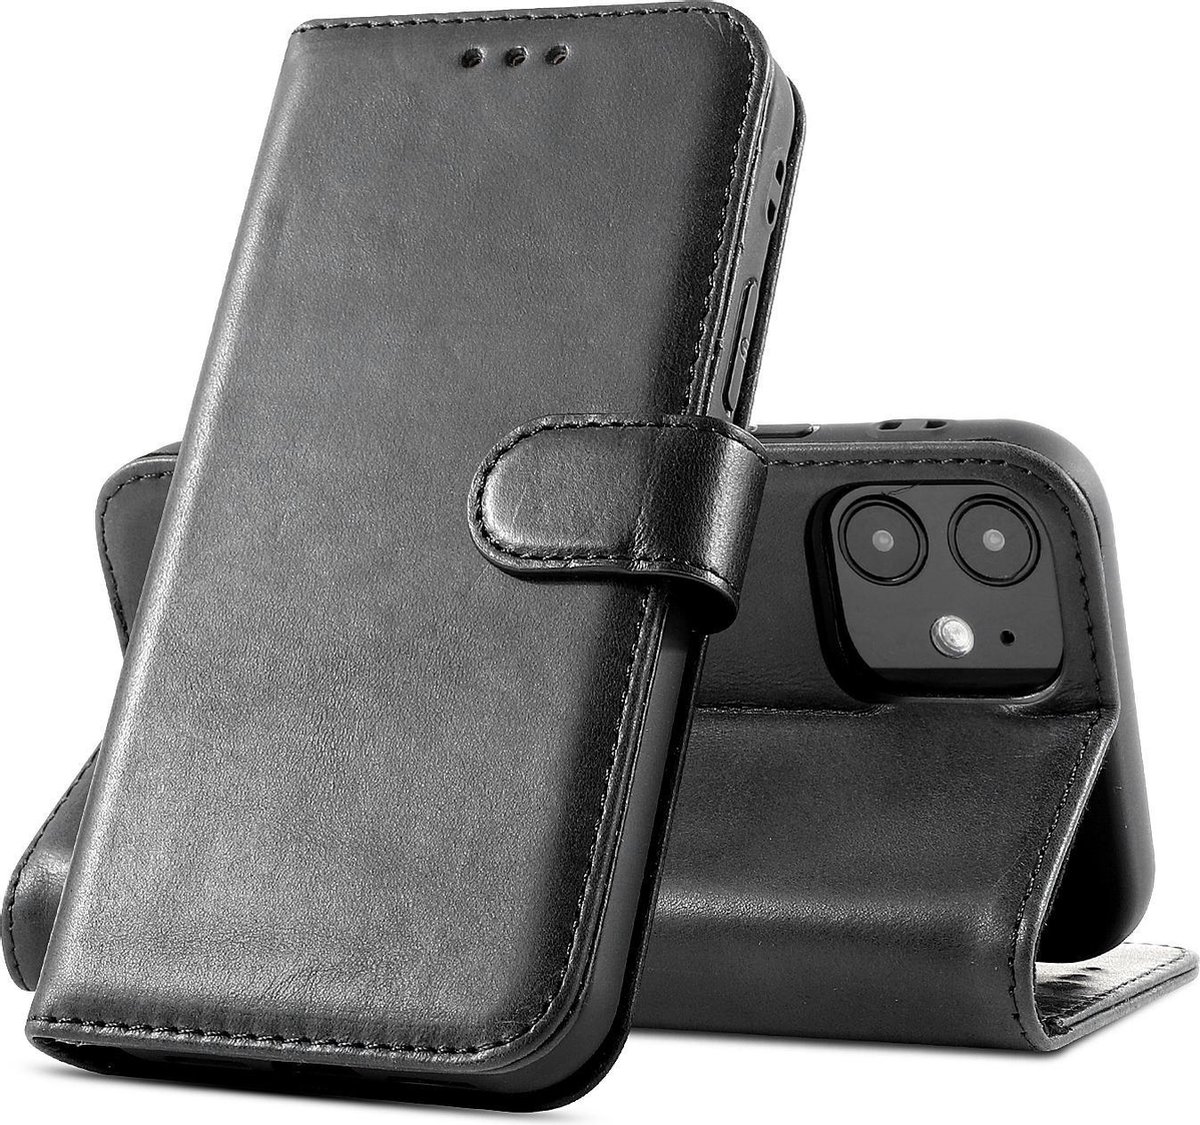 Klassiek Design - Echt Lederen Hoesje - Book Case Telefoonhoesje - Echt Leren Portemonnee Wallet Case - iPhone 12 Mini - Zwart